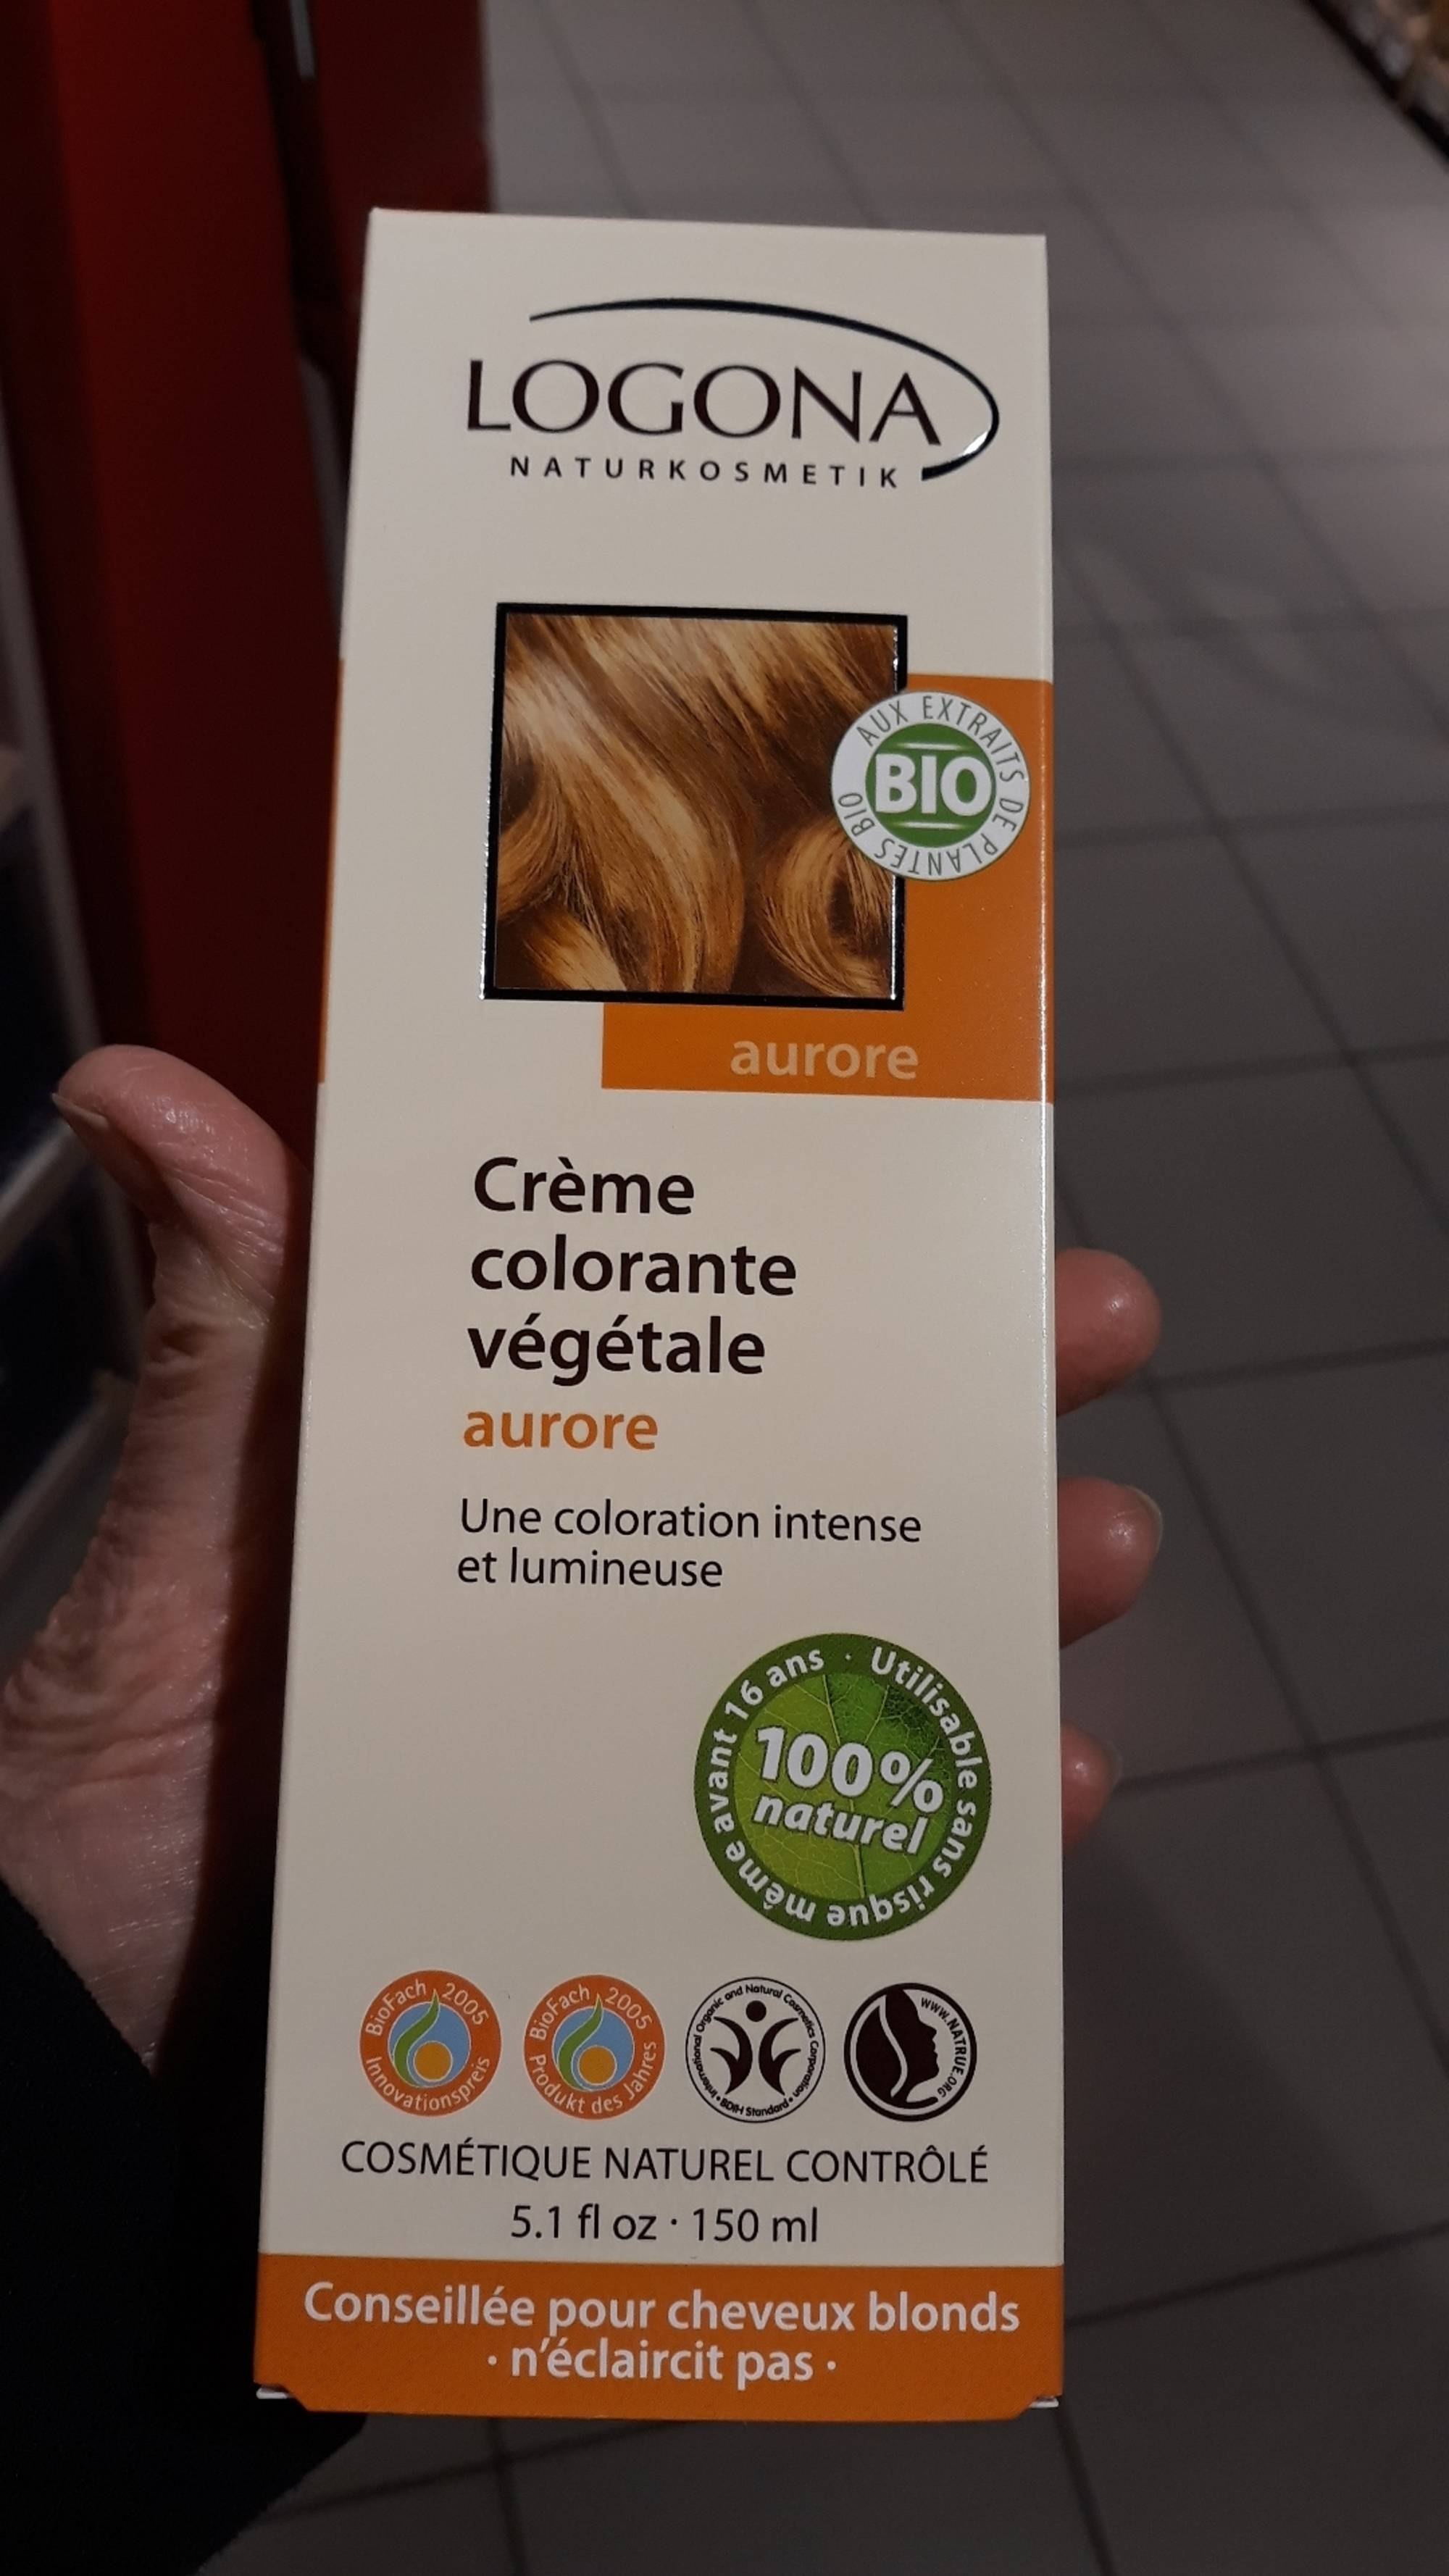 LOGONA - Crème colorante végétale aurore